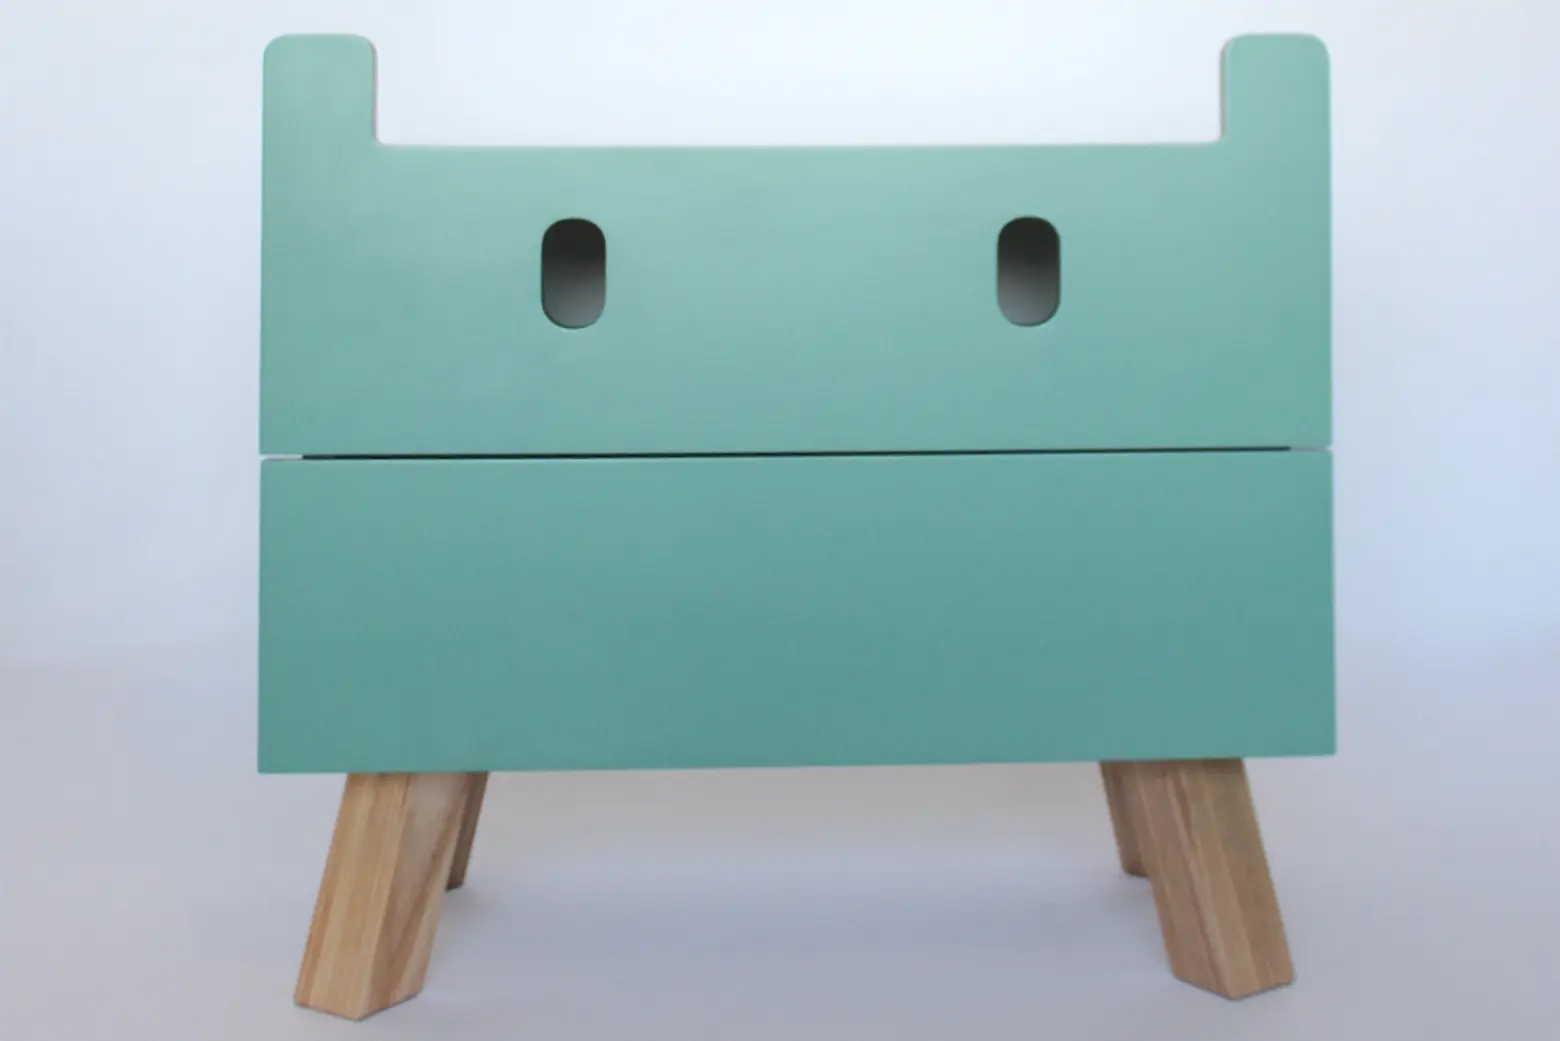 Mostros dresser designed by Oscar Nunez